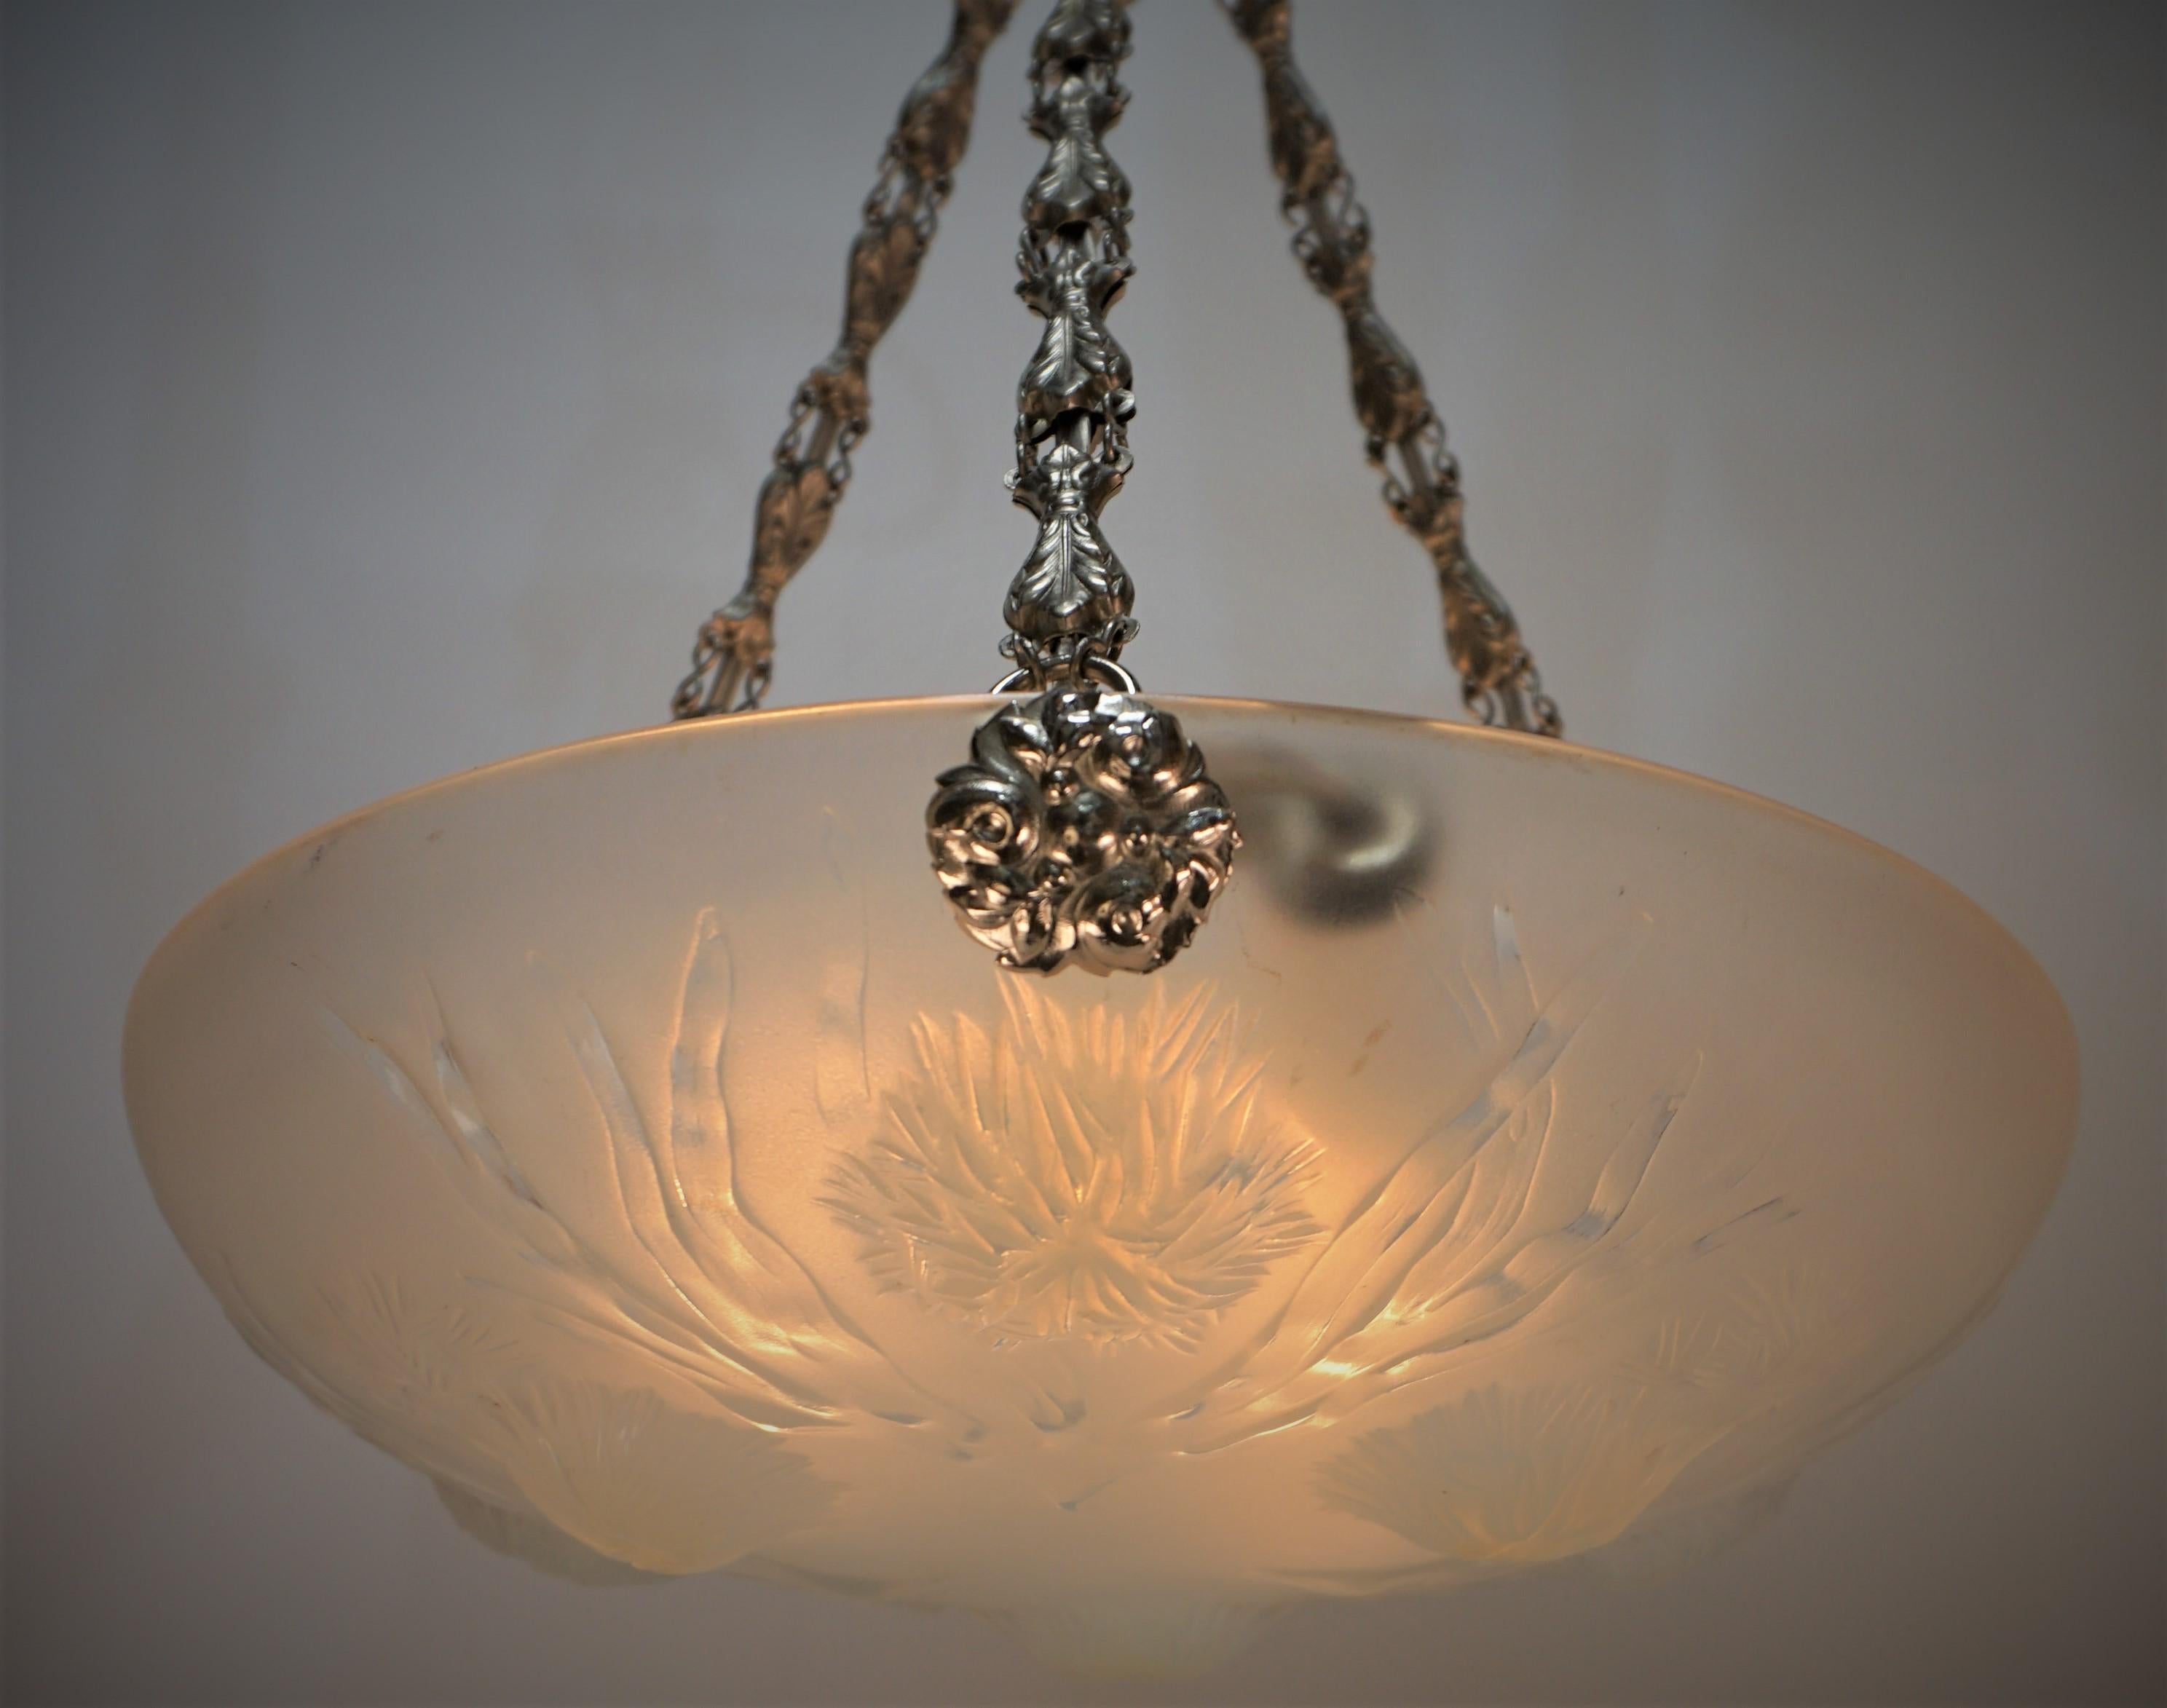 Fabuleux lustre à trois lumières en verre opalescent et nickel sur laiton, de style oursin, datant des années 1920.
Marqué Sabino France
Câblage professionnel et prêt à être installé, 100 watts max par ampoule.